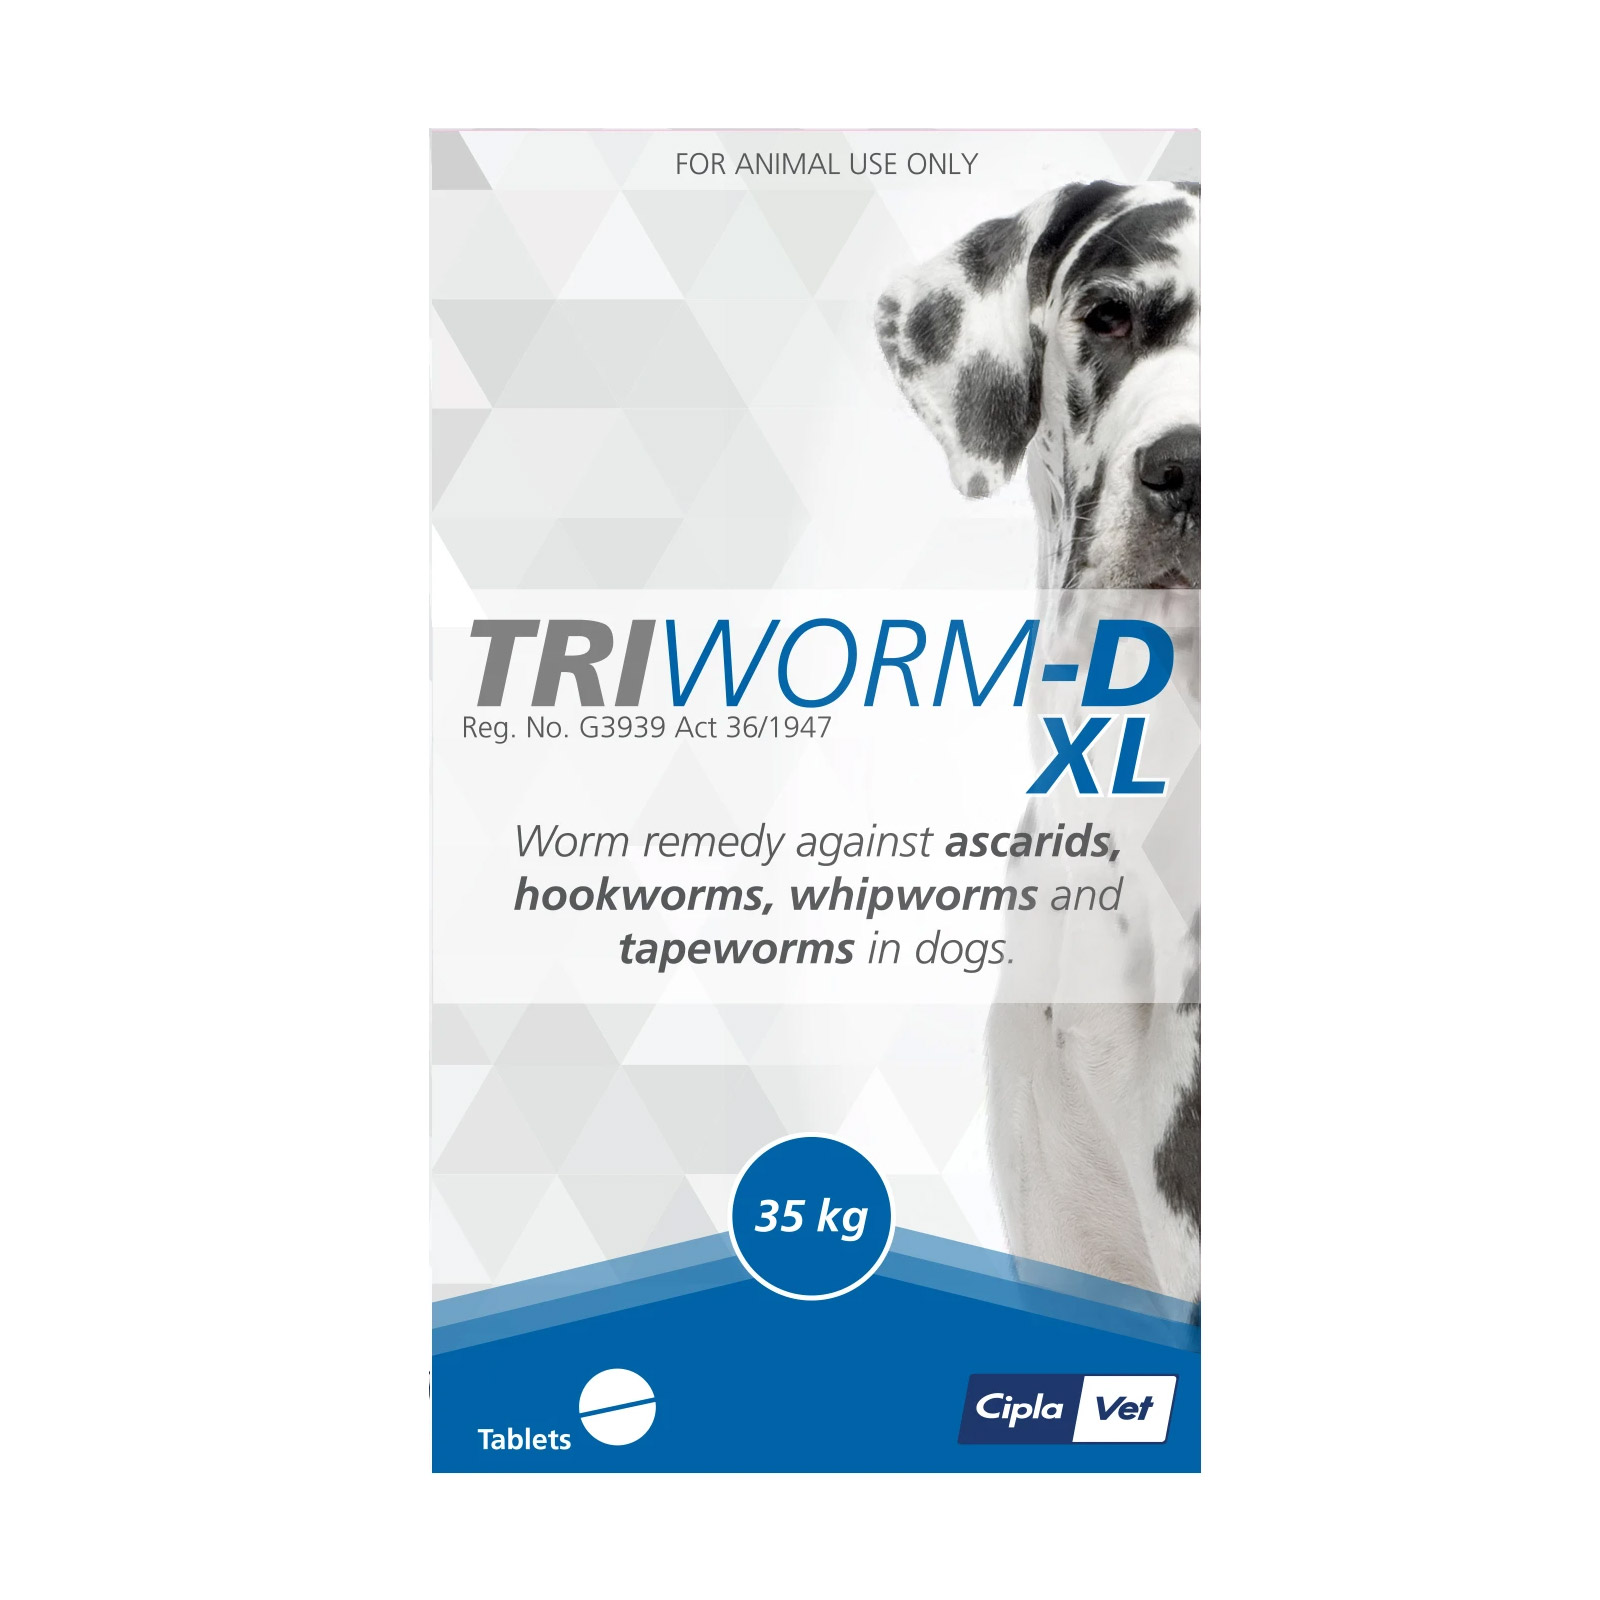 Triworm-D Dewormer For Large Dogs 35kg 1 Tablet